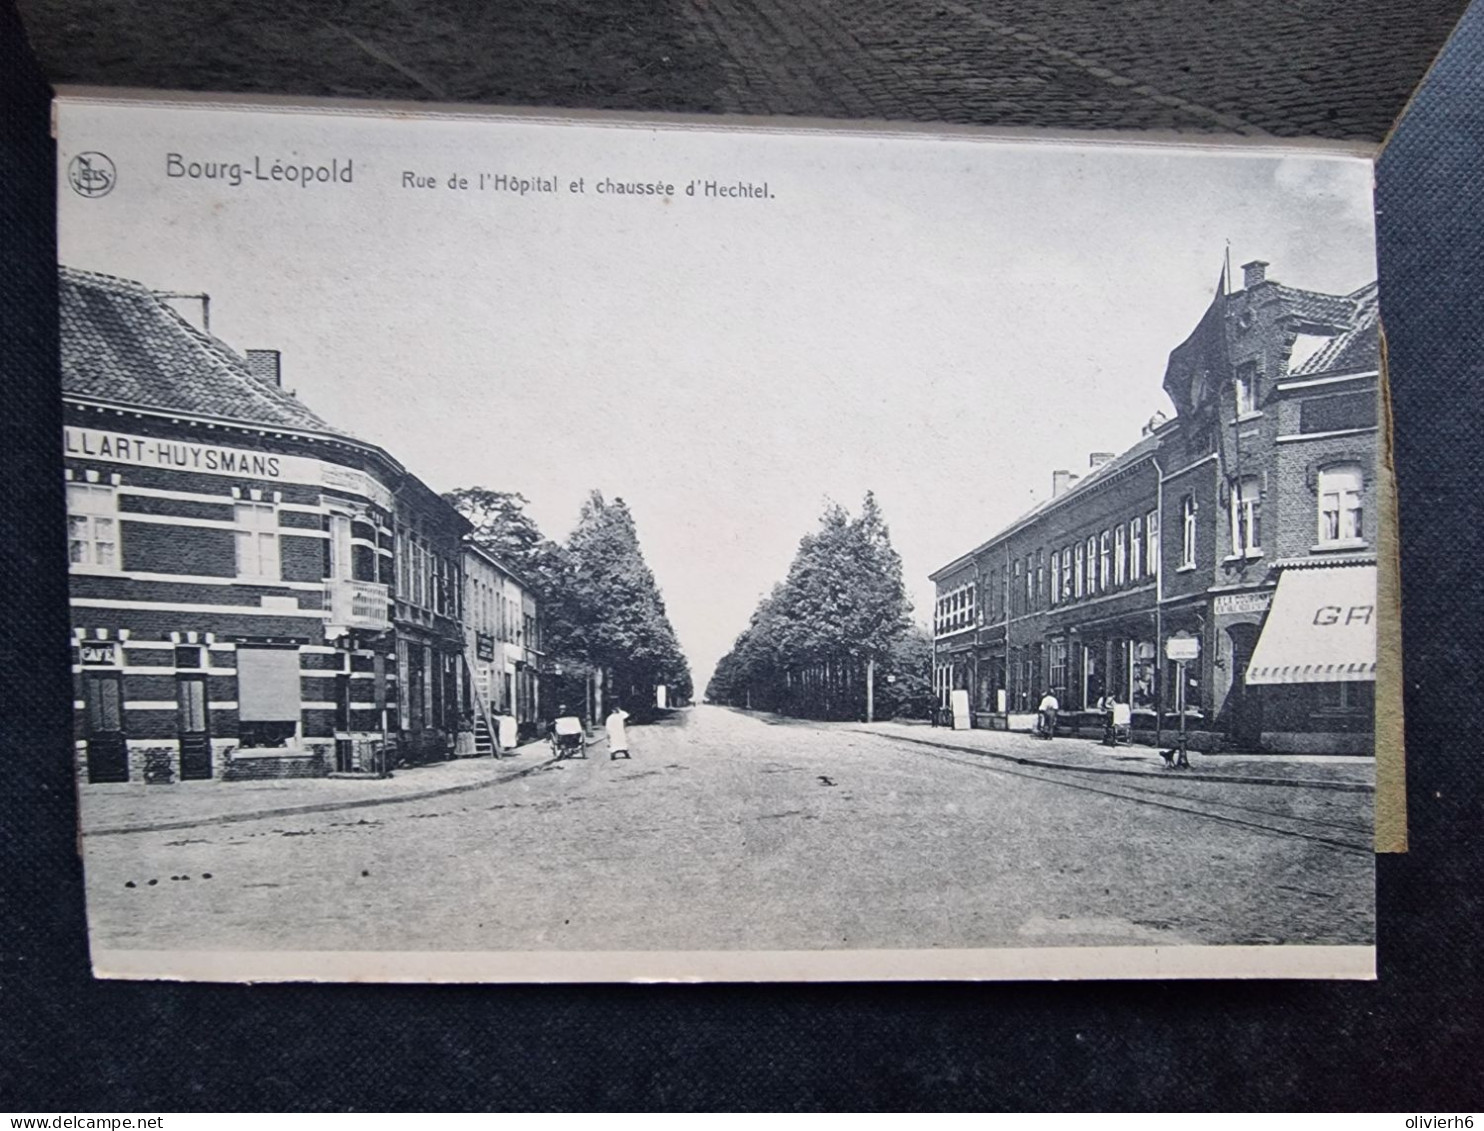 CARNET 10 CP BELGIQUE (M2408) BOURG LEOPOLD (12 vues) LE VILLAGE - La gare Hôtel du Camp La poste Rue Jacolet